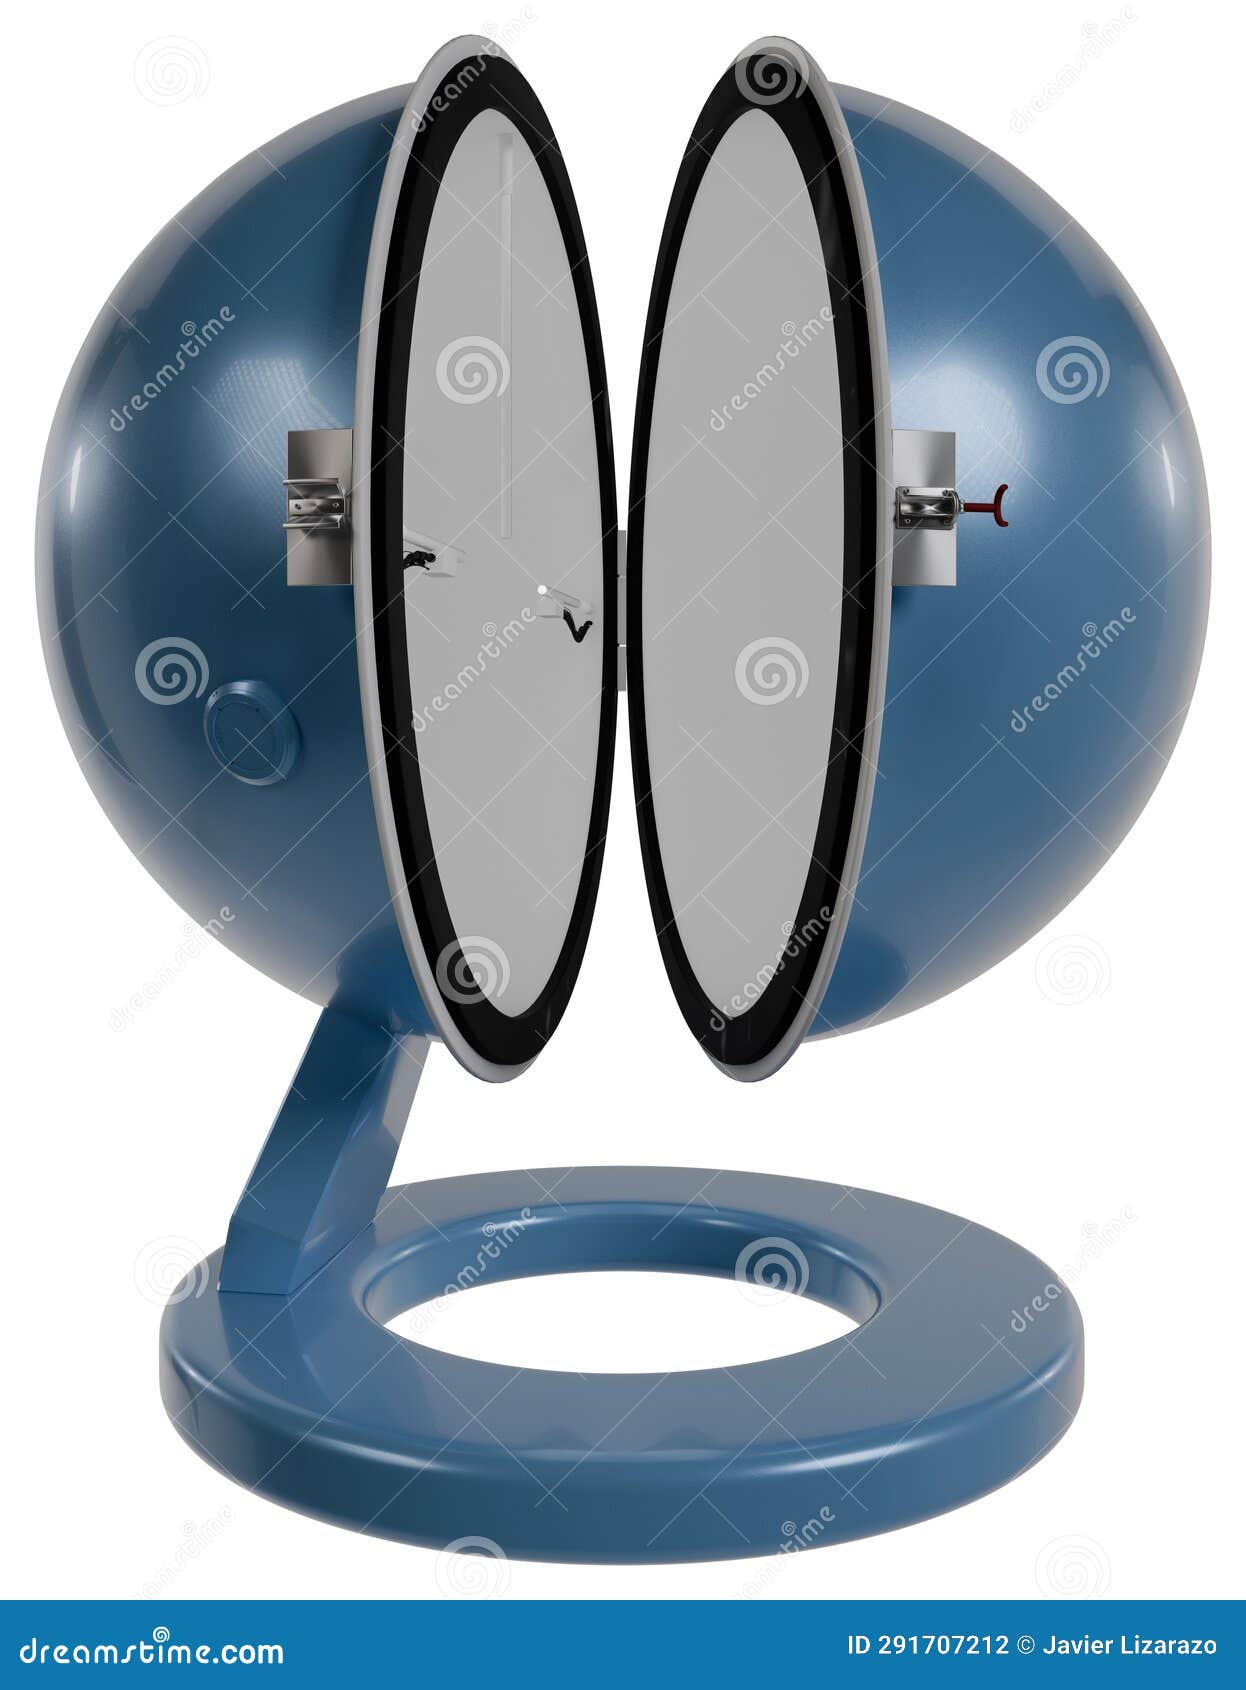 ulbricht sphere for luminous flux measurement front view esfera de ulbricht para la mediciÃÂ³n del flujo luminoso vista frontal